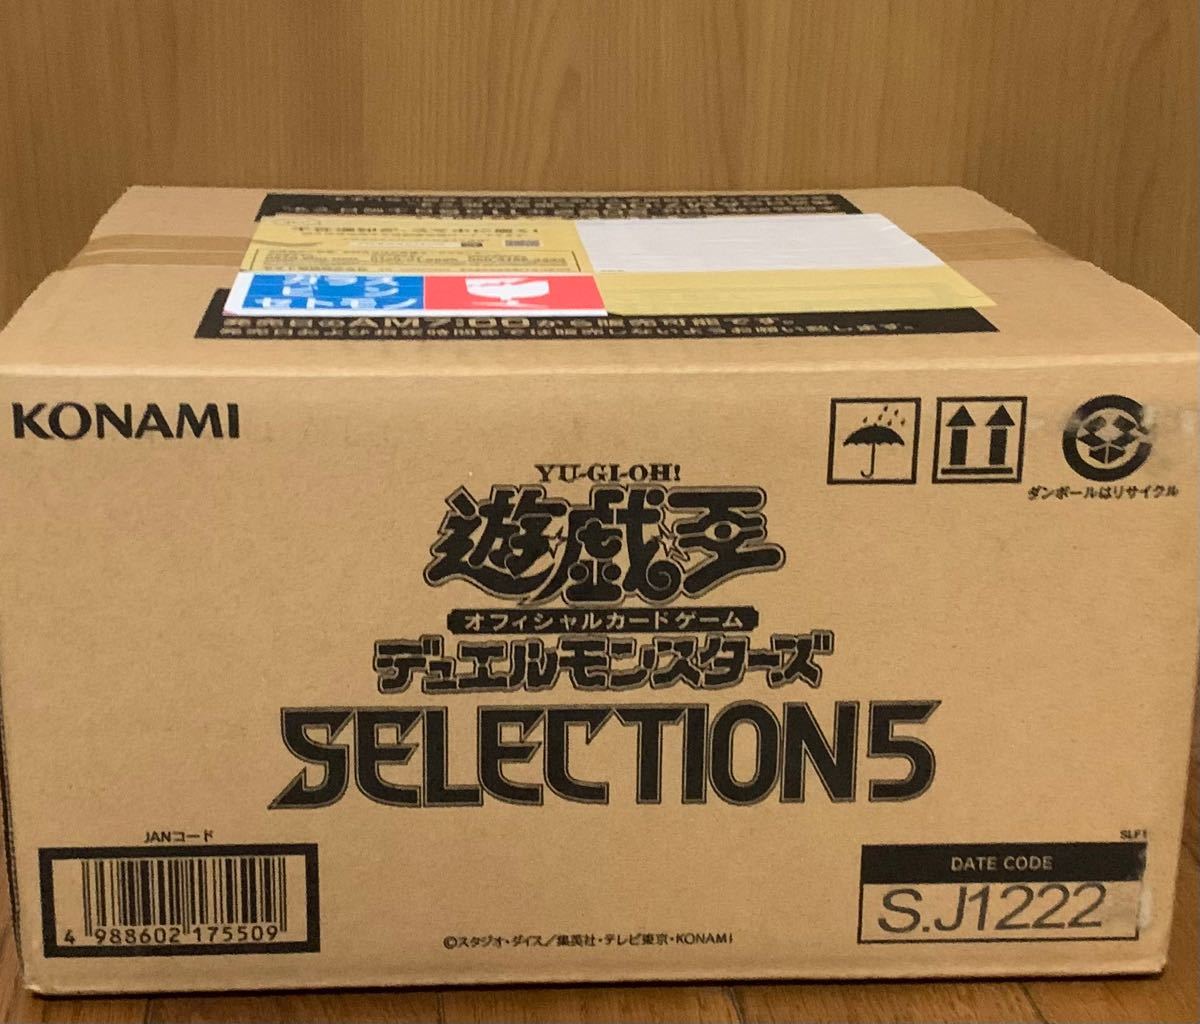 遊戯王OCG SELECTION5 セレクション5 1カートン(24BOX入り) yugioh 